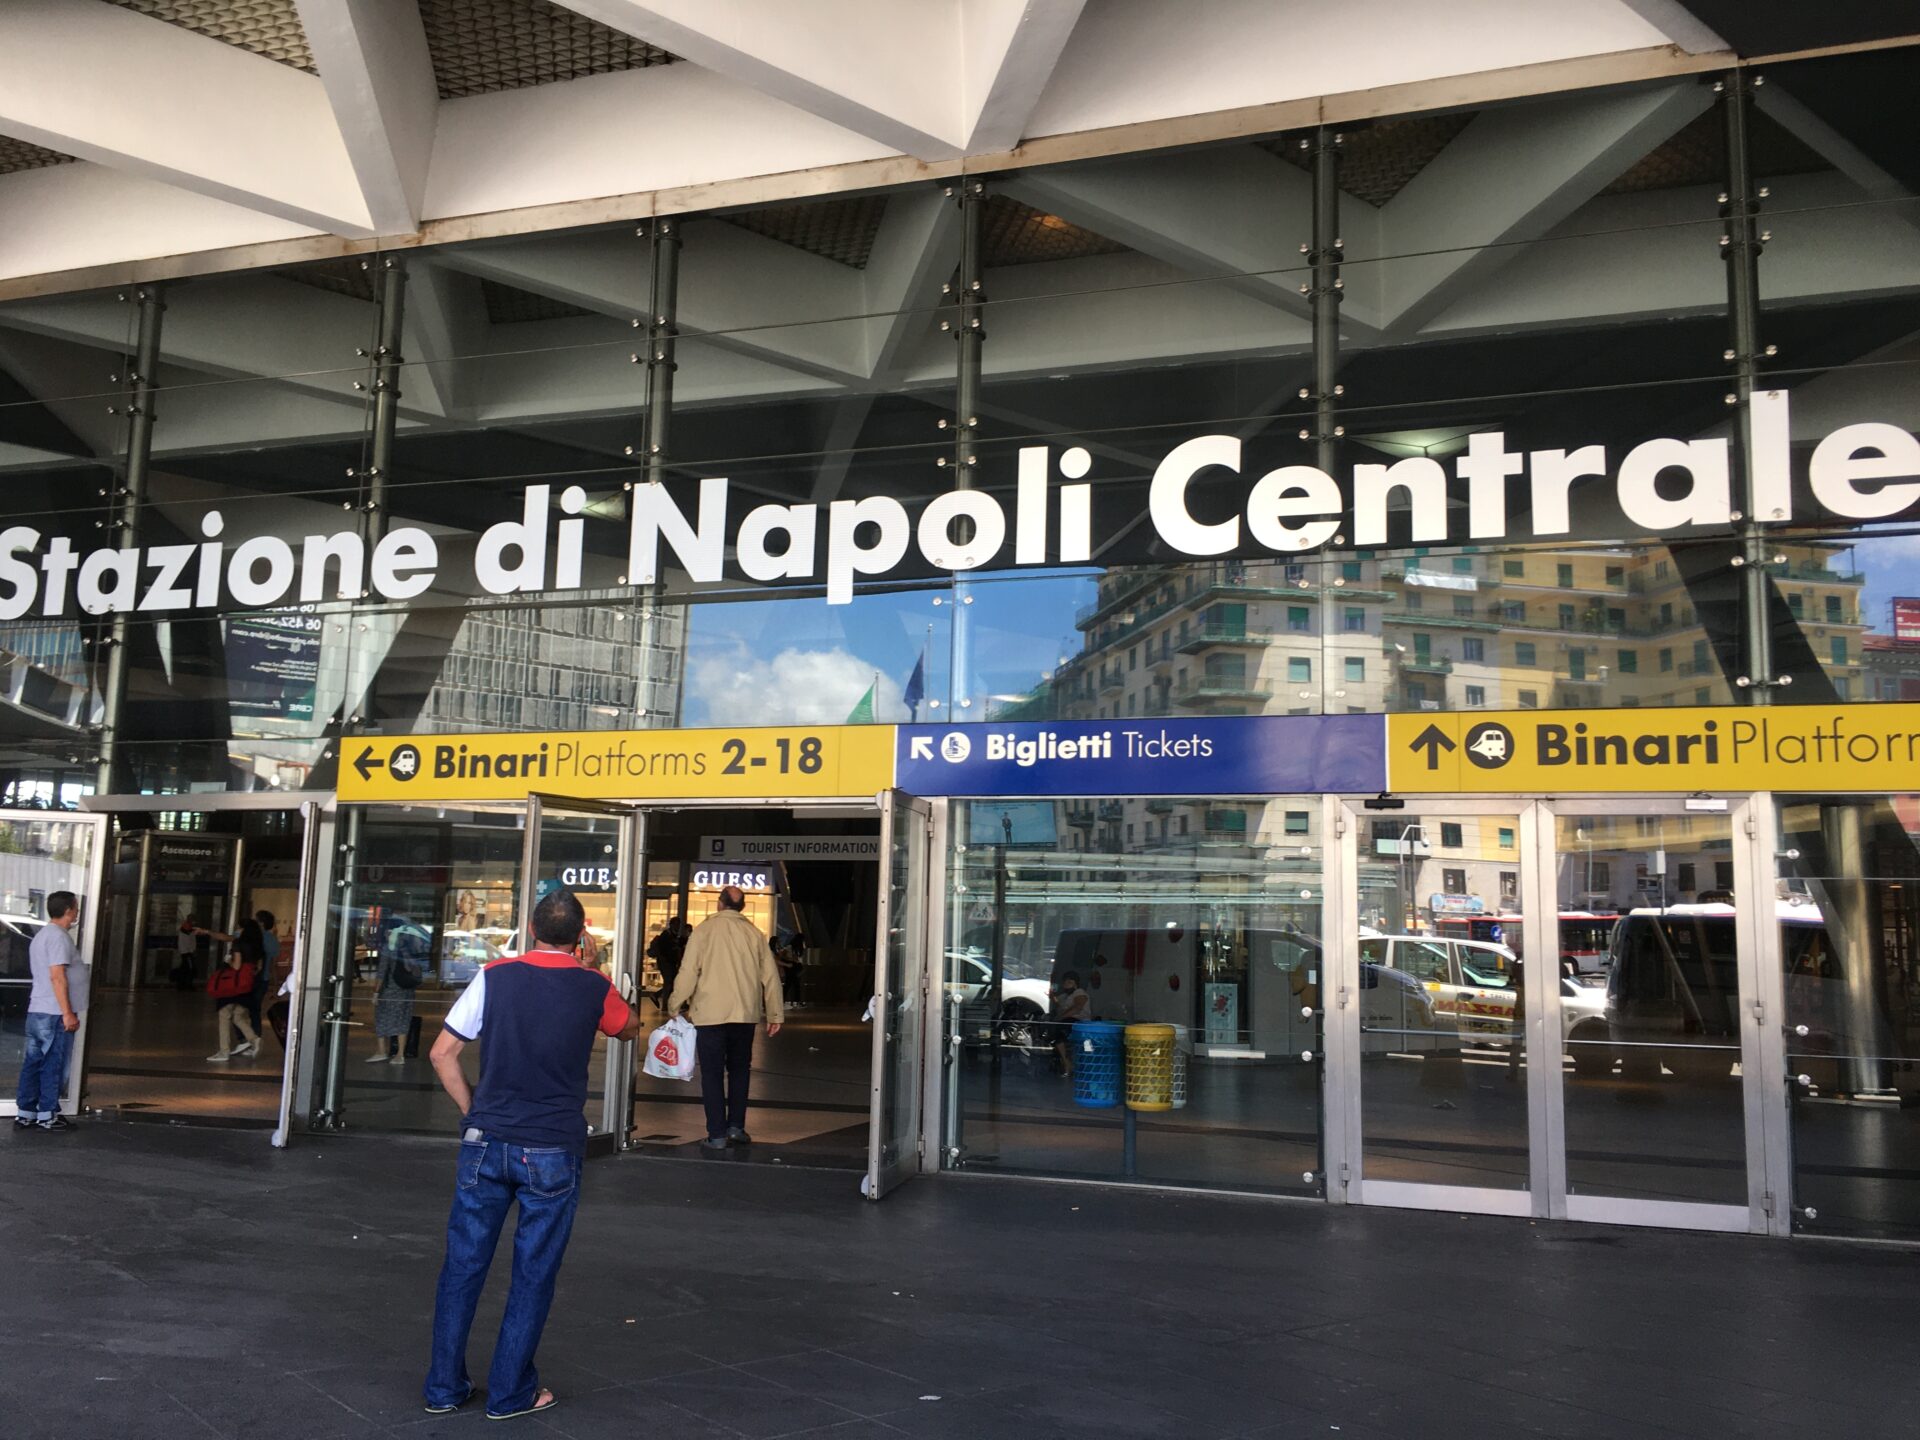 Stazione di Napoli Centrale